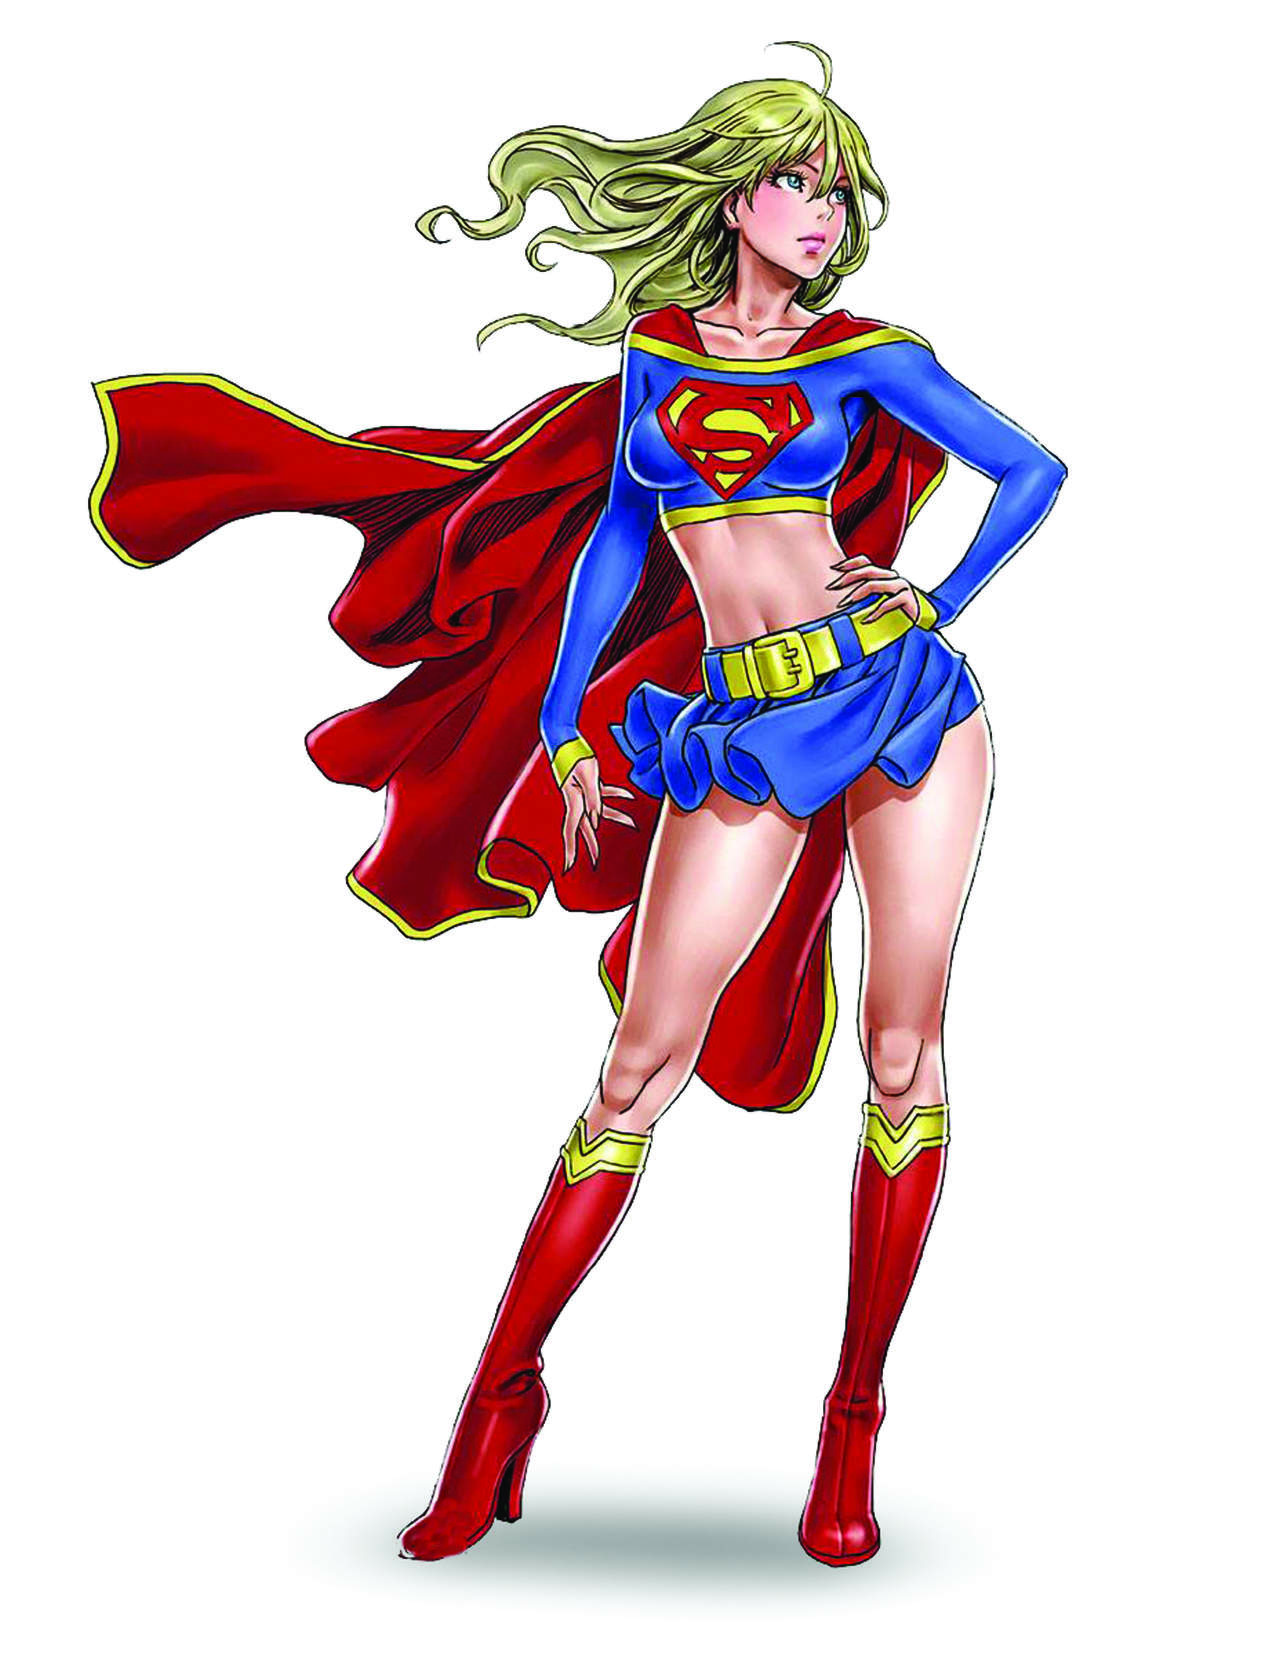 “SUPERGIRL”. “Supergirl”, la prima de “Superman”, cuenta con su propia serie de TV, la cual emite el Canal de Warner. Va en su tercera temporada. La actriz
Melissa Benoist es la encargada de darle vida. En los comics ha trabajo sola, con la Liga de la Justicia y con la Legión de Superhéroes.